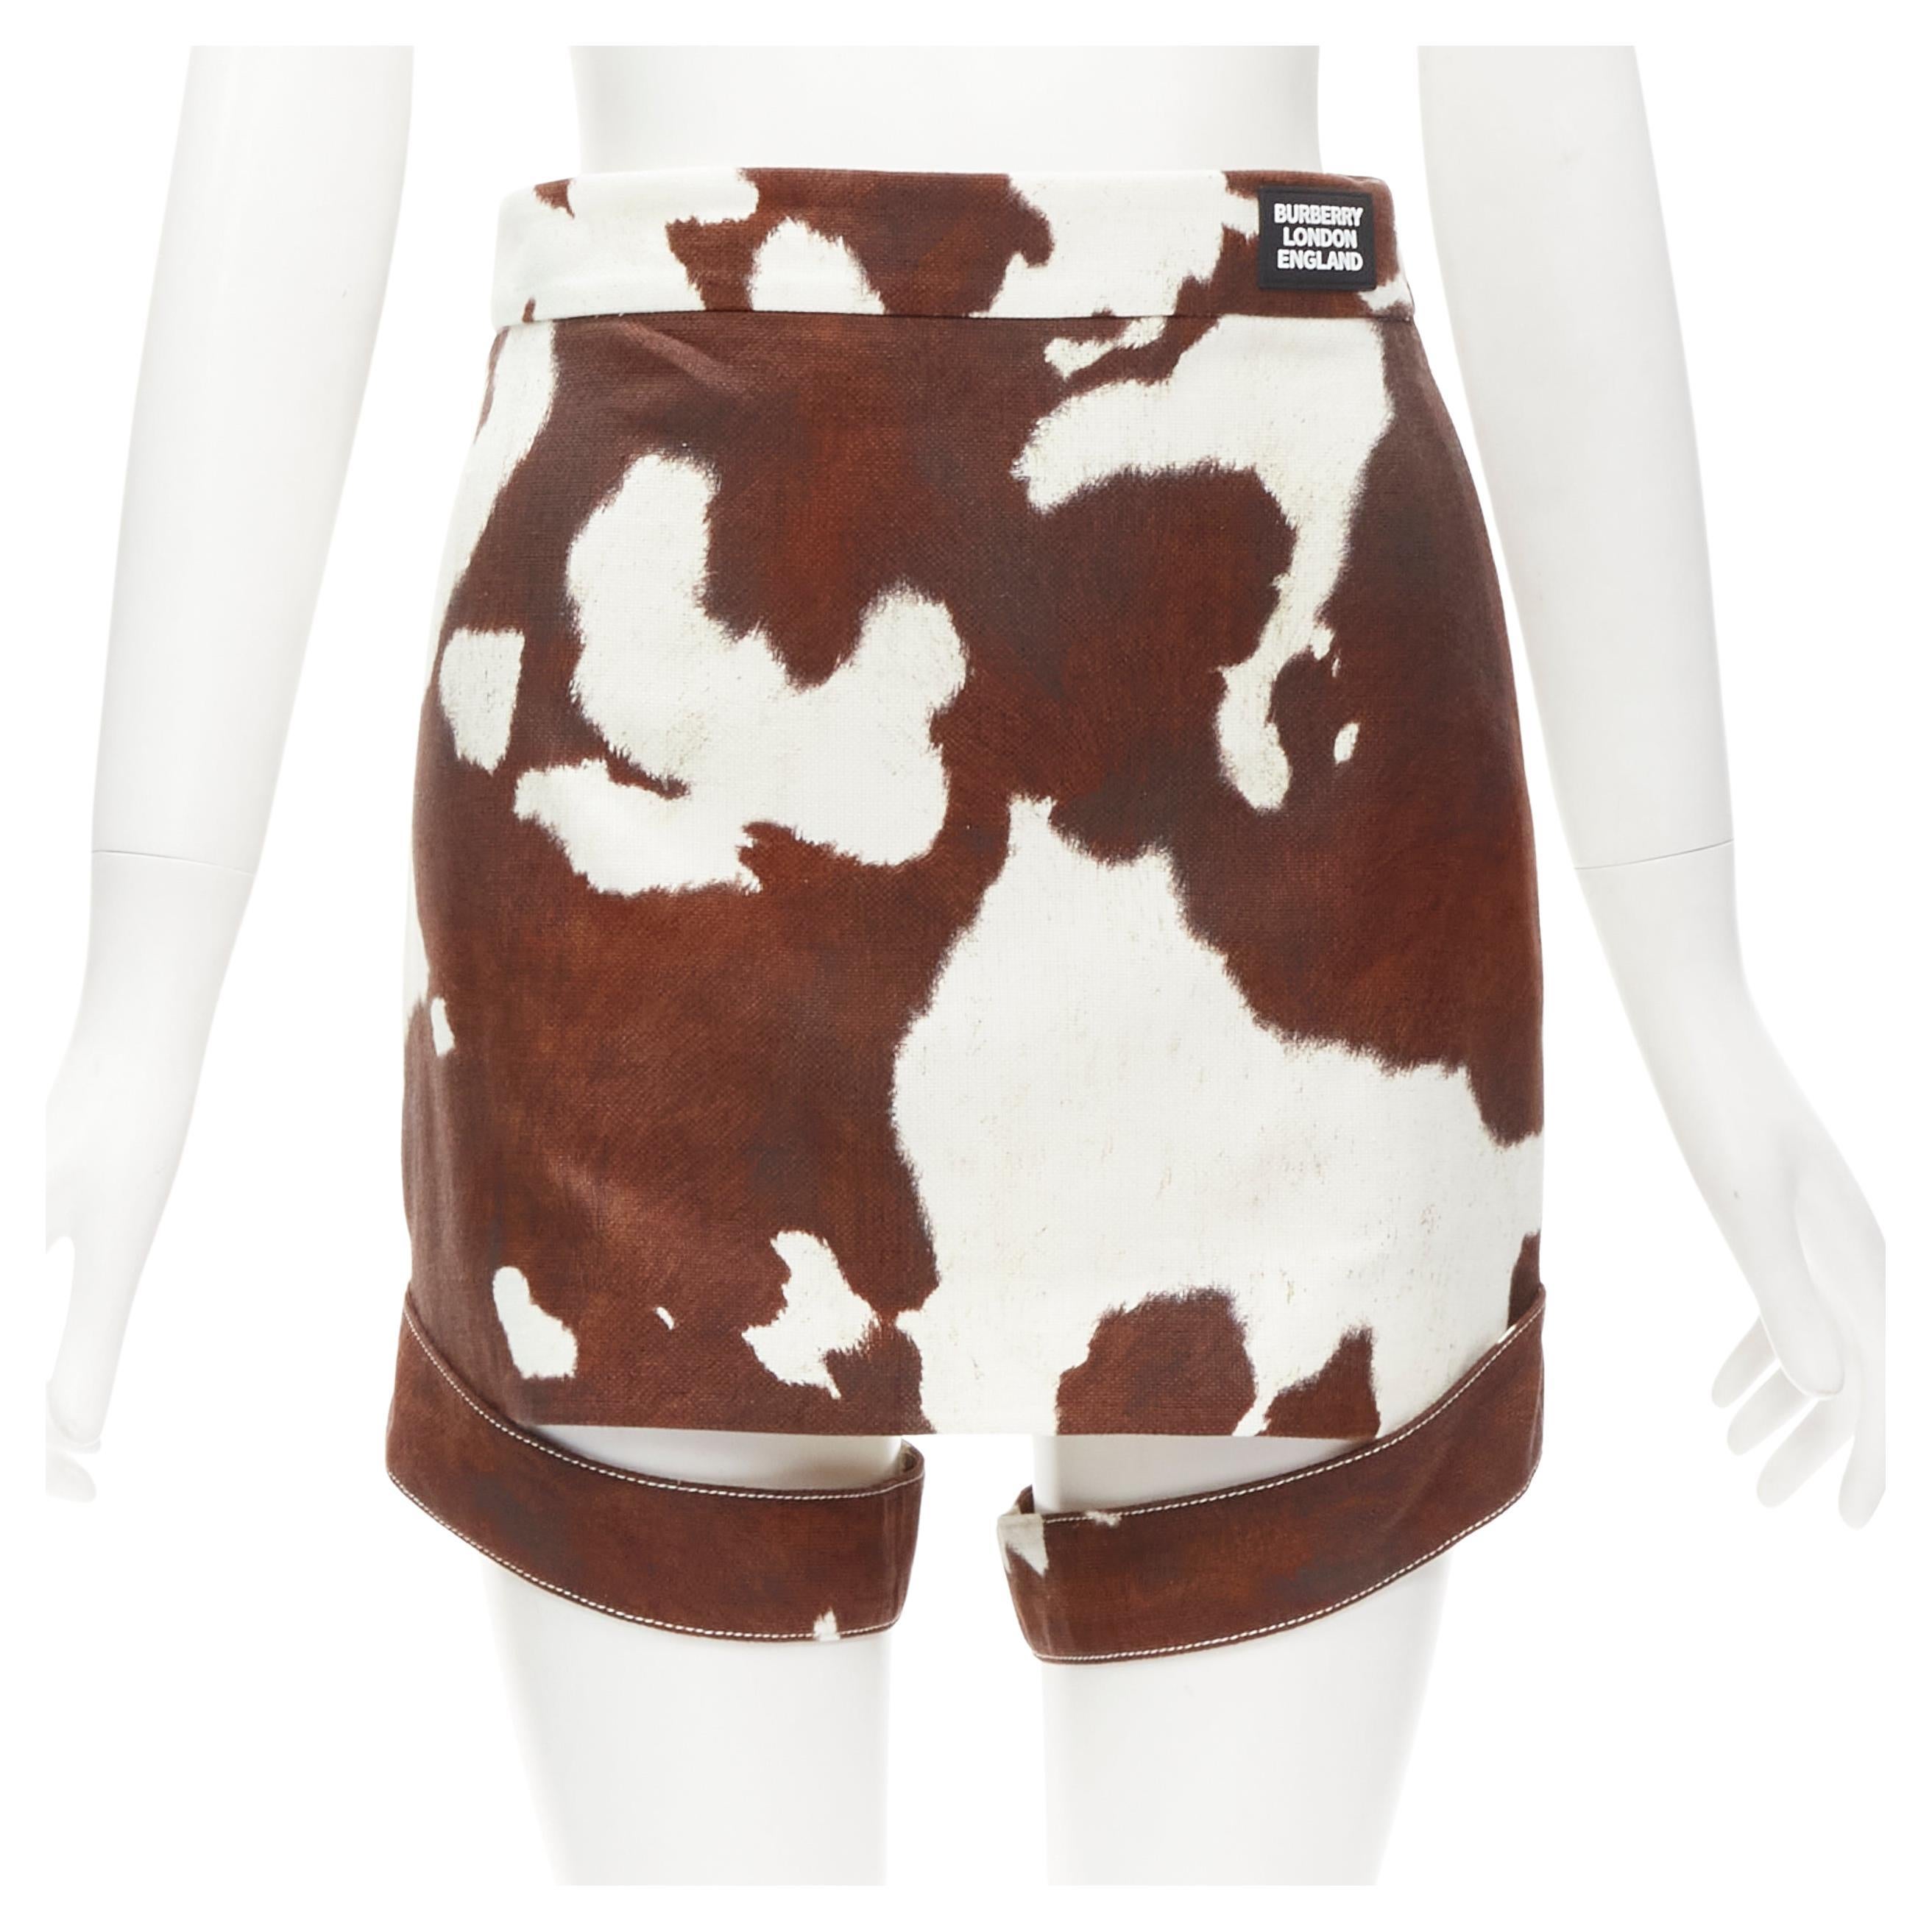 BURBERRY Riccardo Tisci brown cow print leg garter mini skirt S